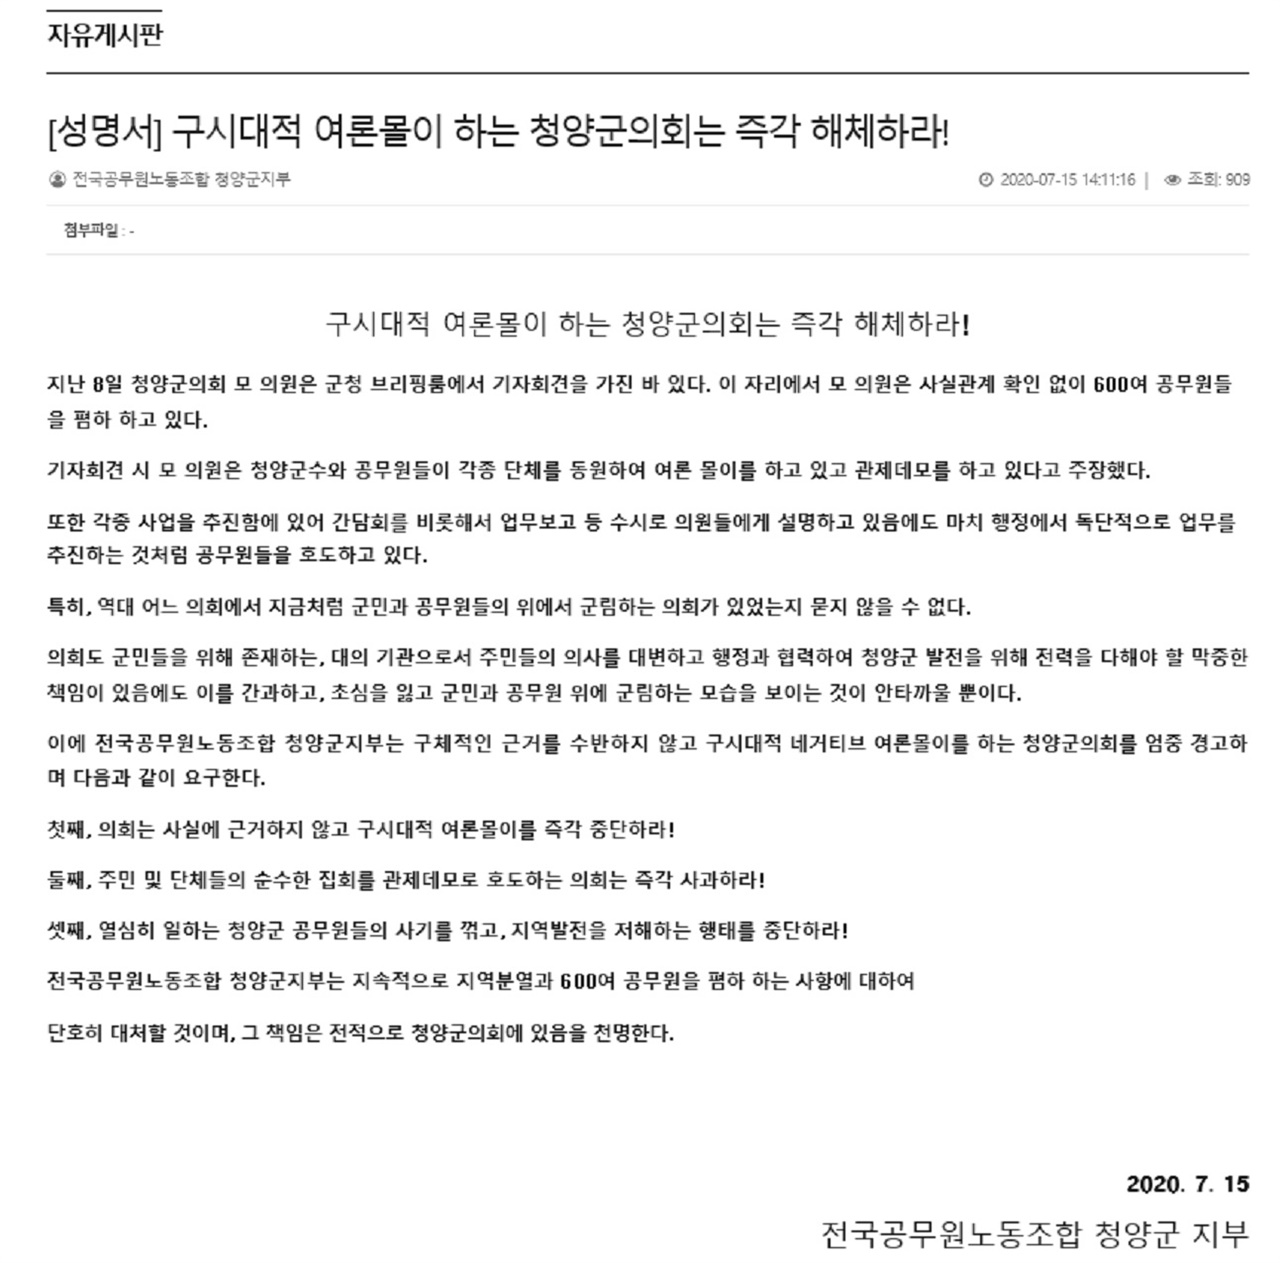 전국공무원노동조합 청양군지부가 지난 15일 청양신문 자유게시판에 올린 성명서 전문.